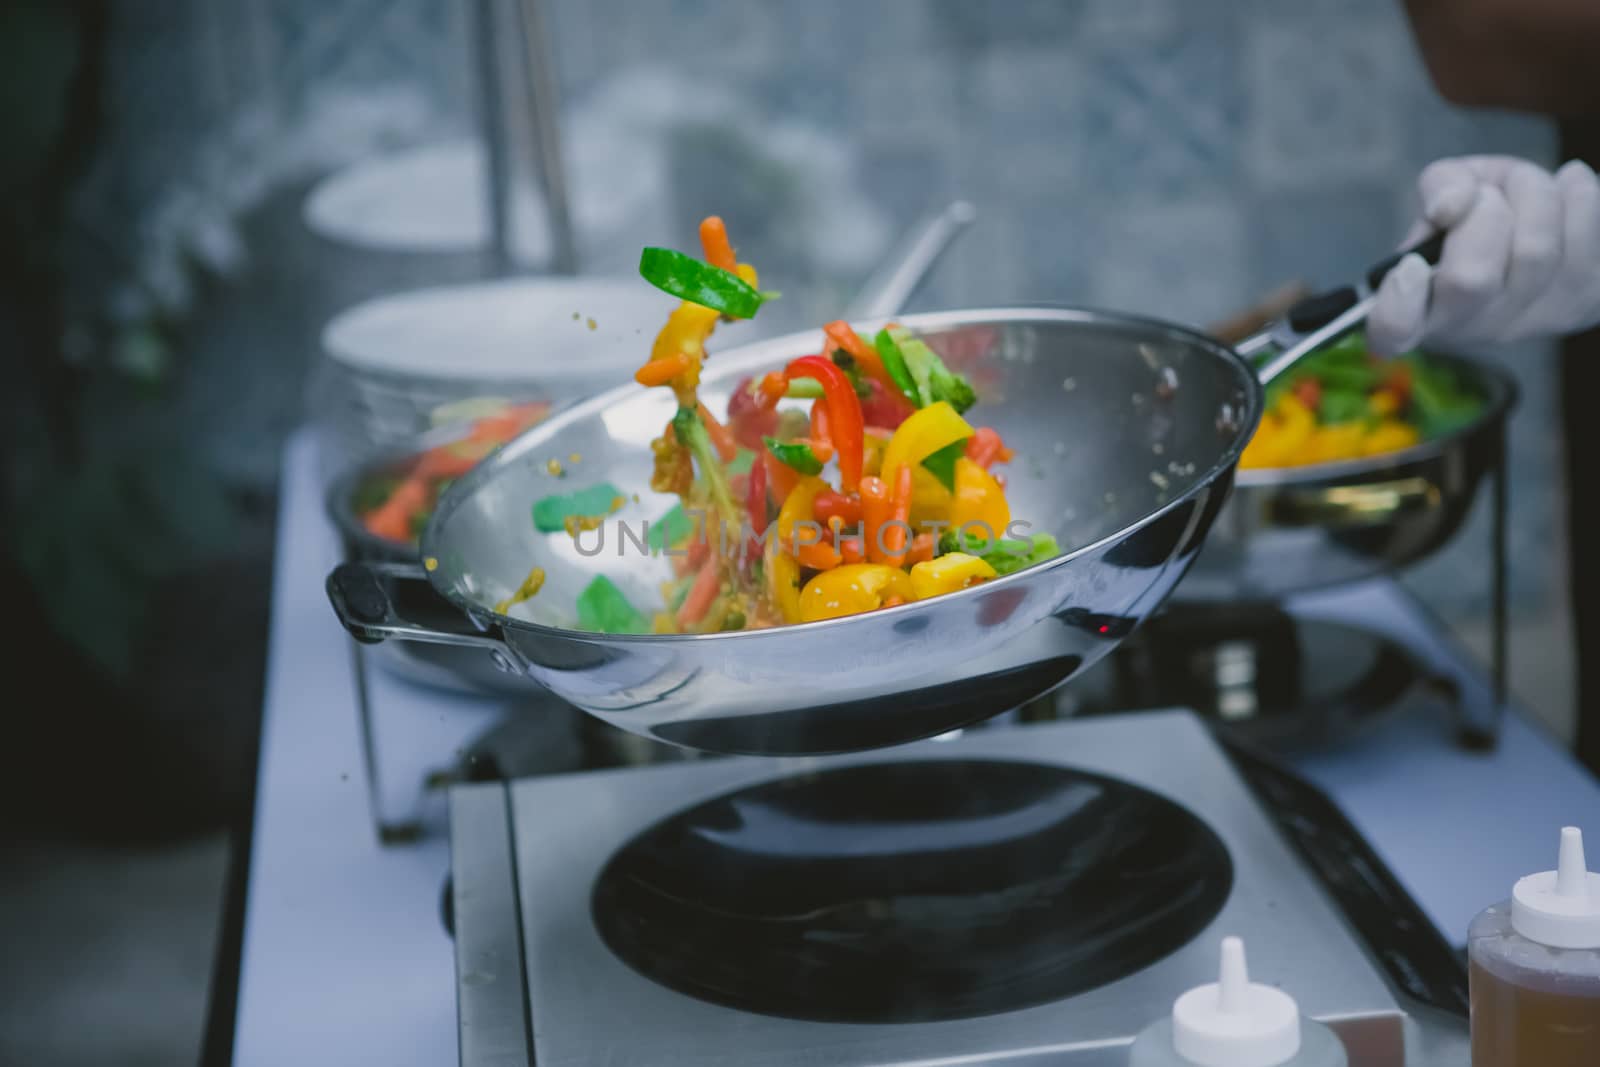 cooking vegetables in wok pan by sarymsakov